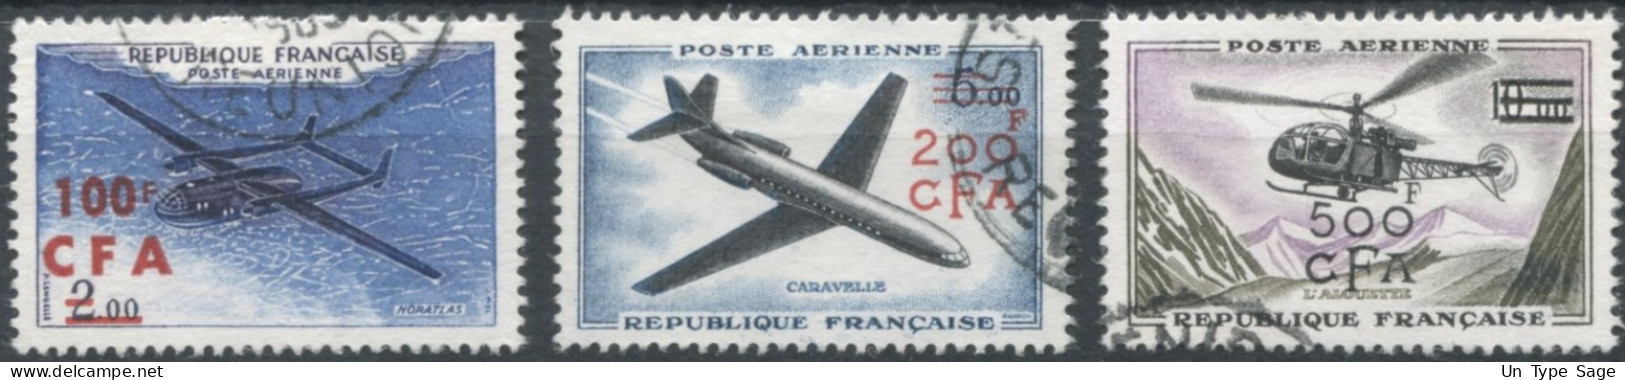 Réunion Poste Aérienne N°58 à 60 - Oblitérés - (F1589) - Airmail